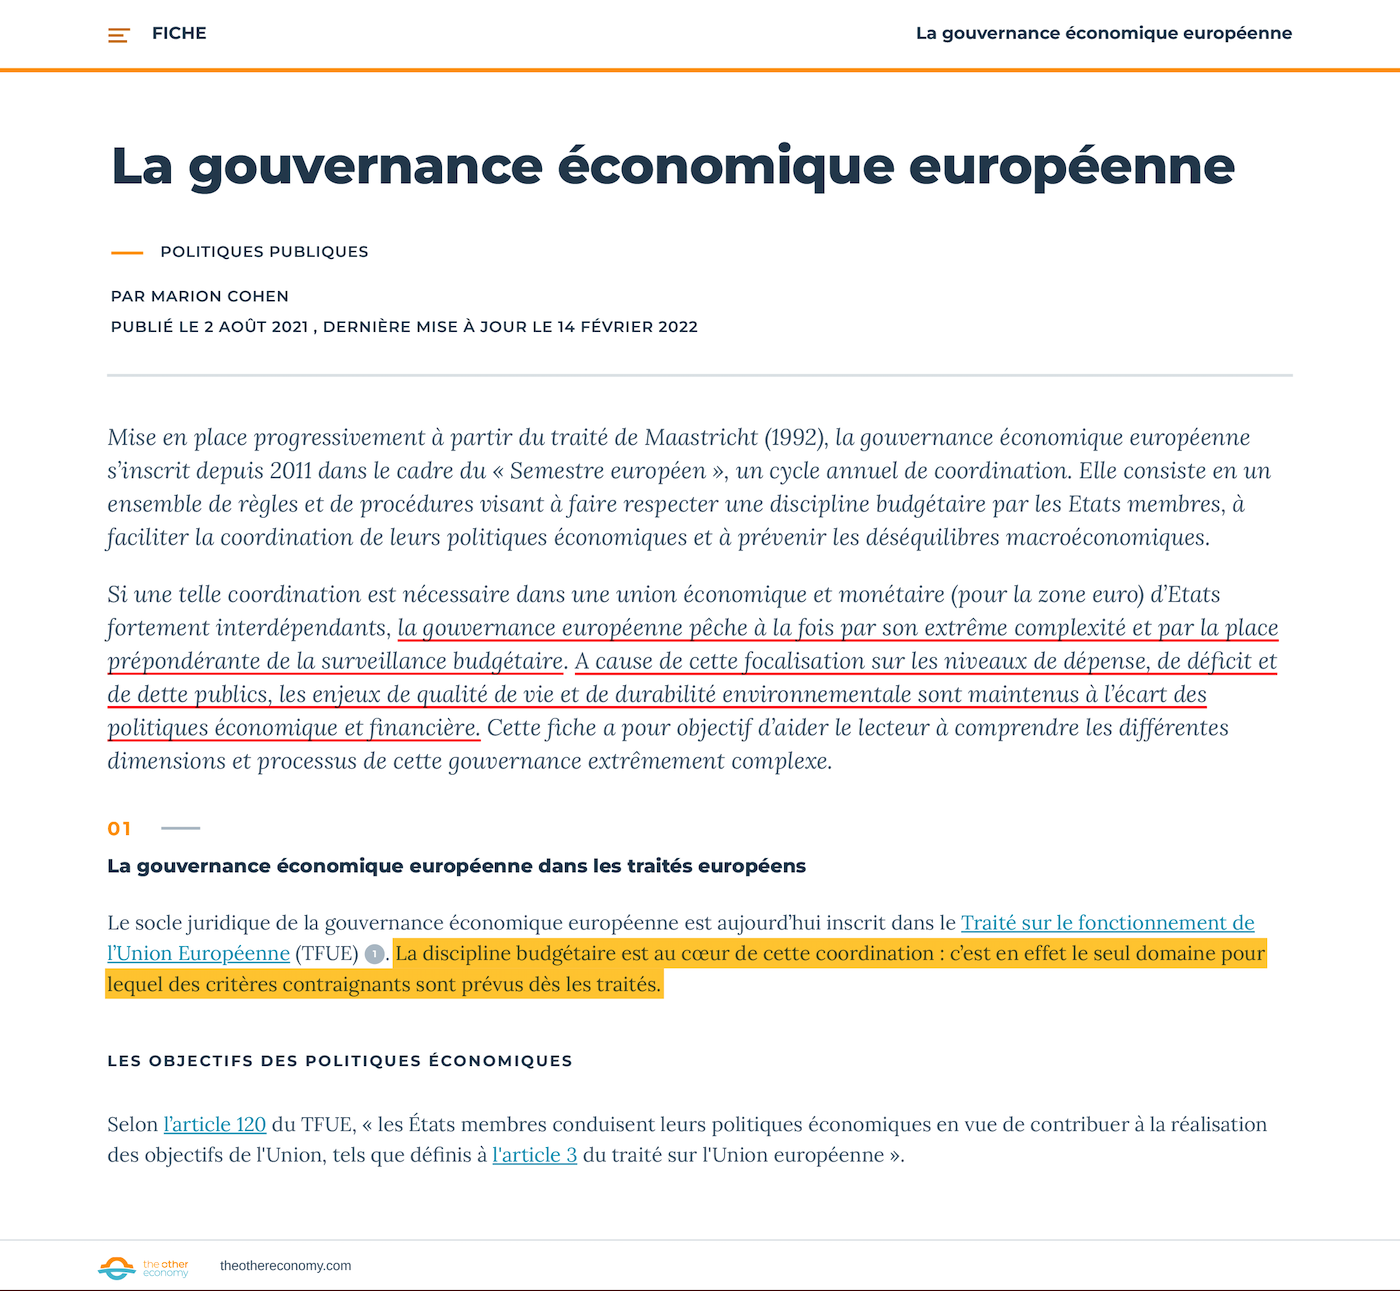 Impression-écran de la page explicative de la gouvernance économique européenne par le site theothereconomy.com.